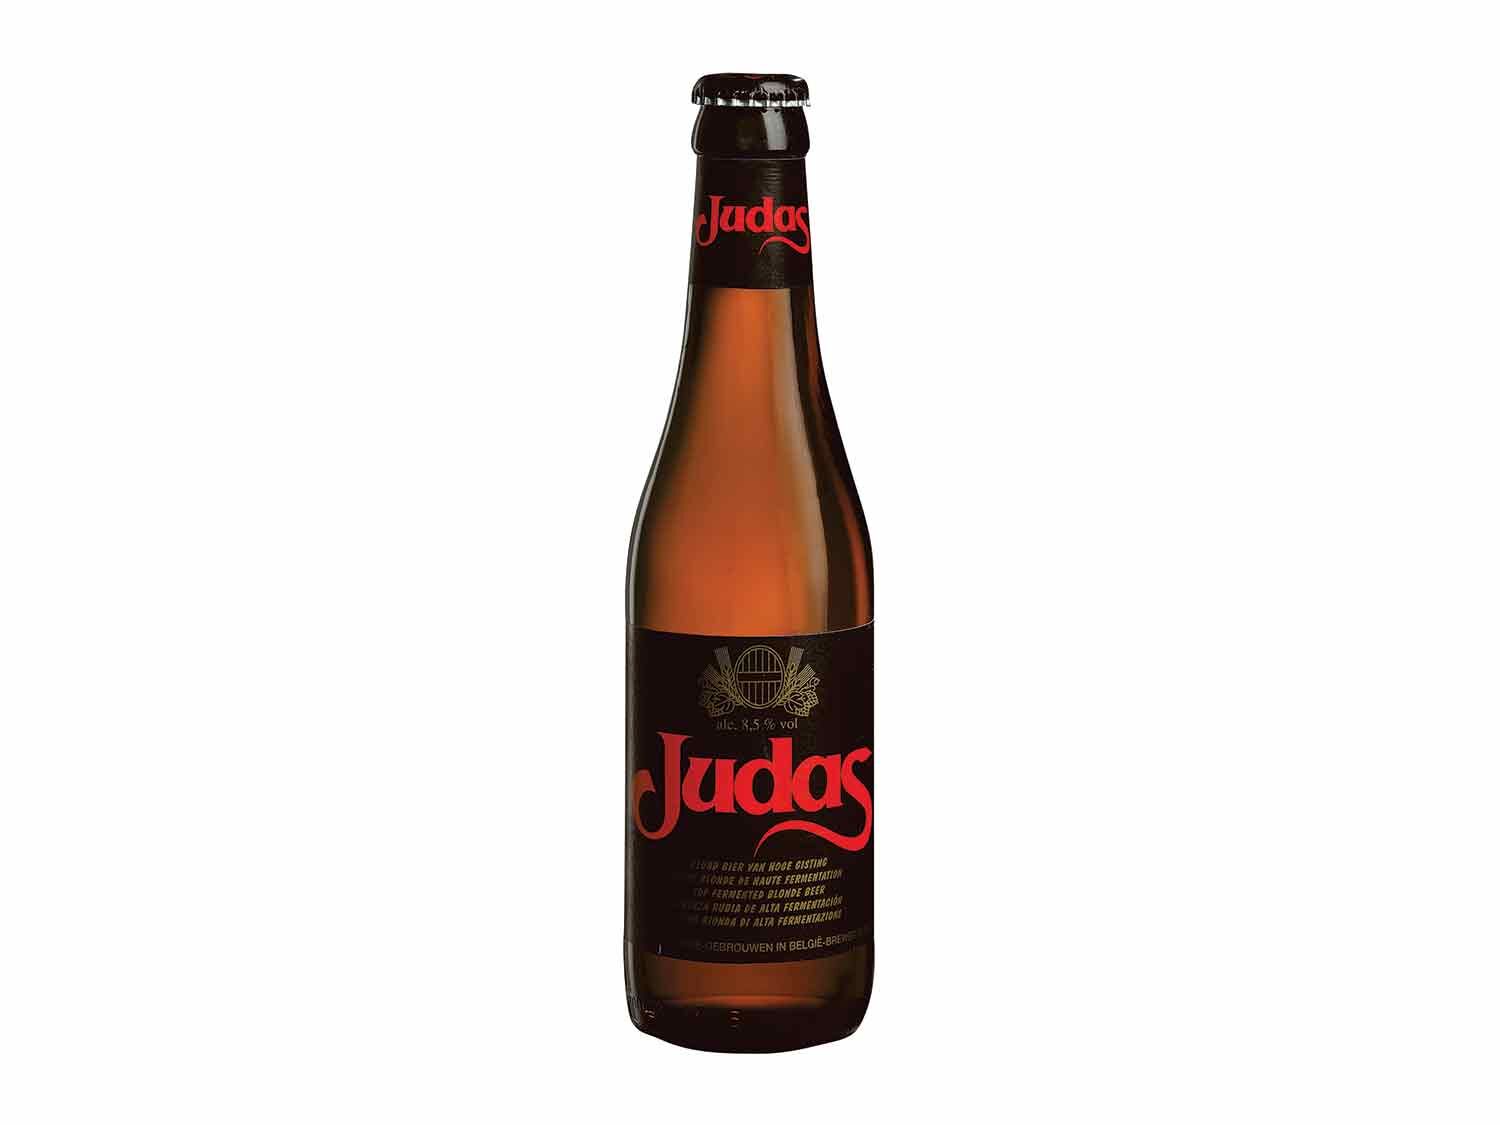 Judas® Cerveza rubia belga